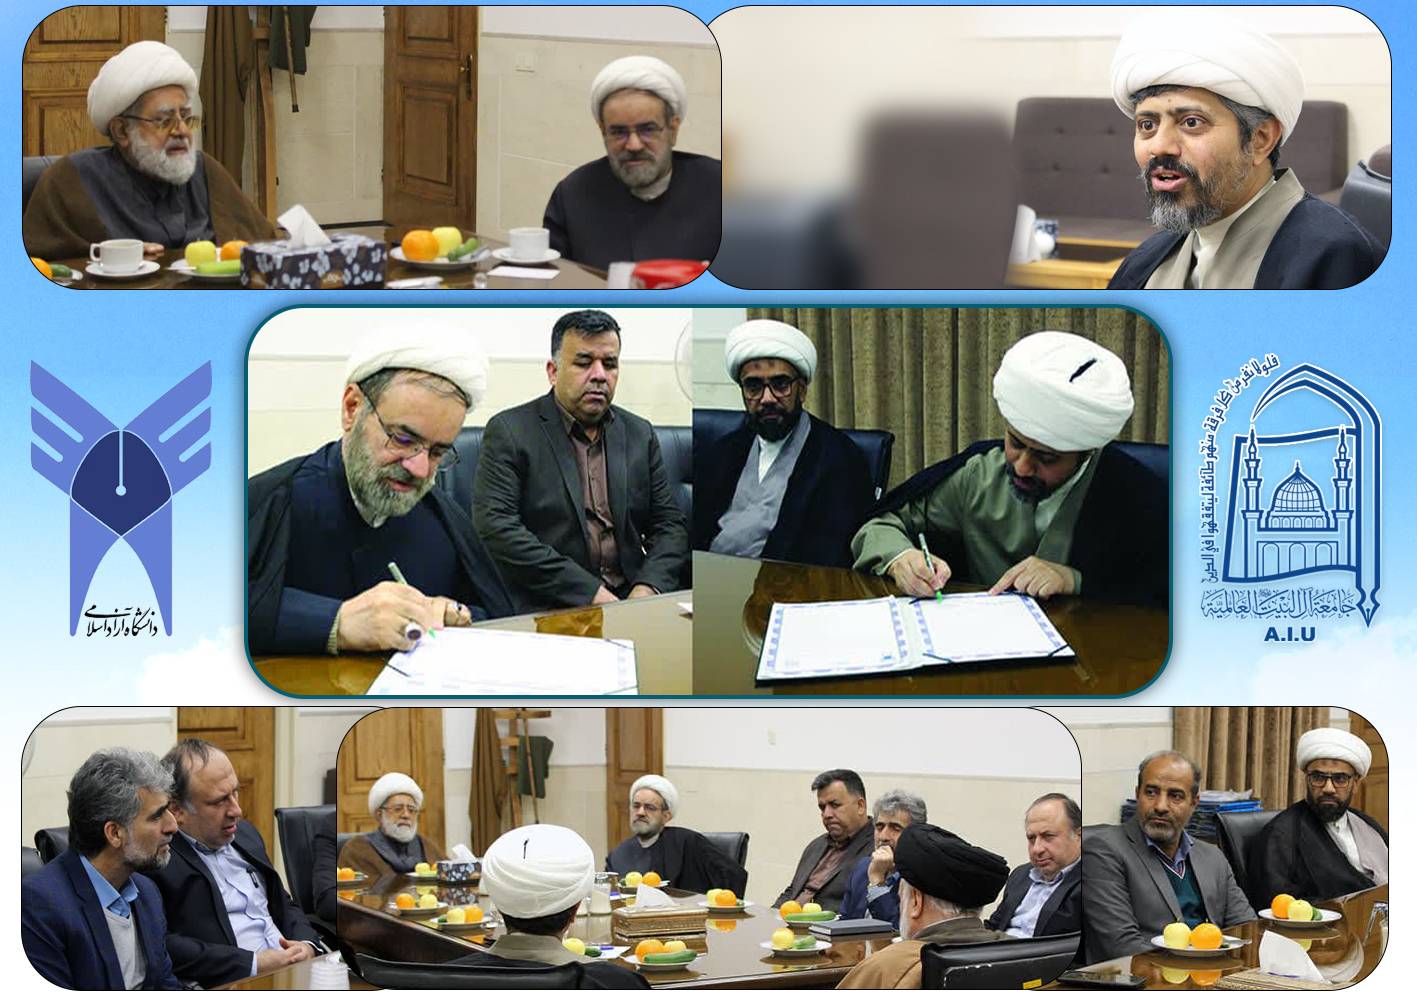 جامعة آل البيت(ع) العالمية توقع مذكرة تفاهم مع جامعة آزاد الإسلامية